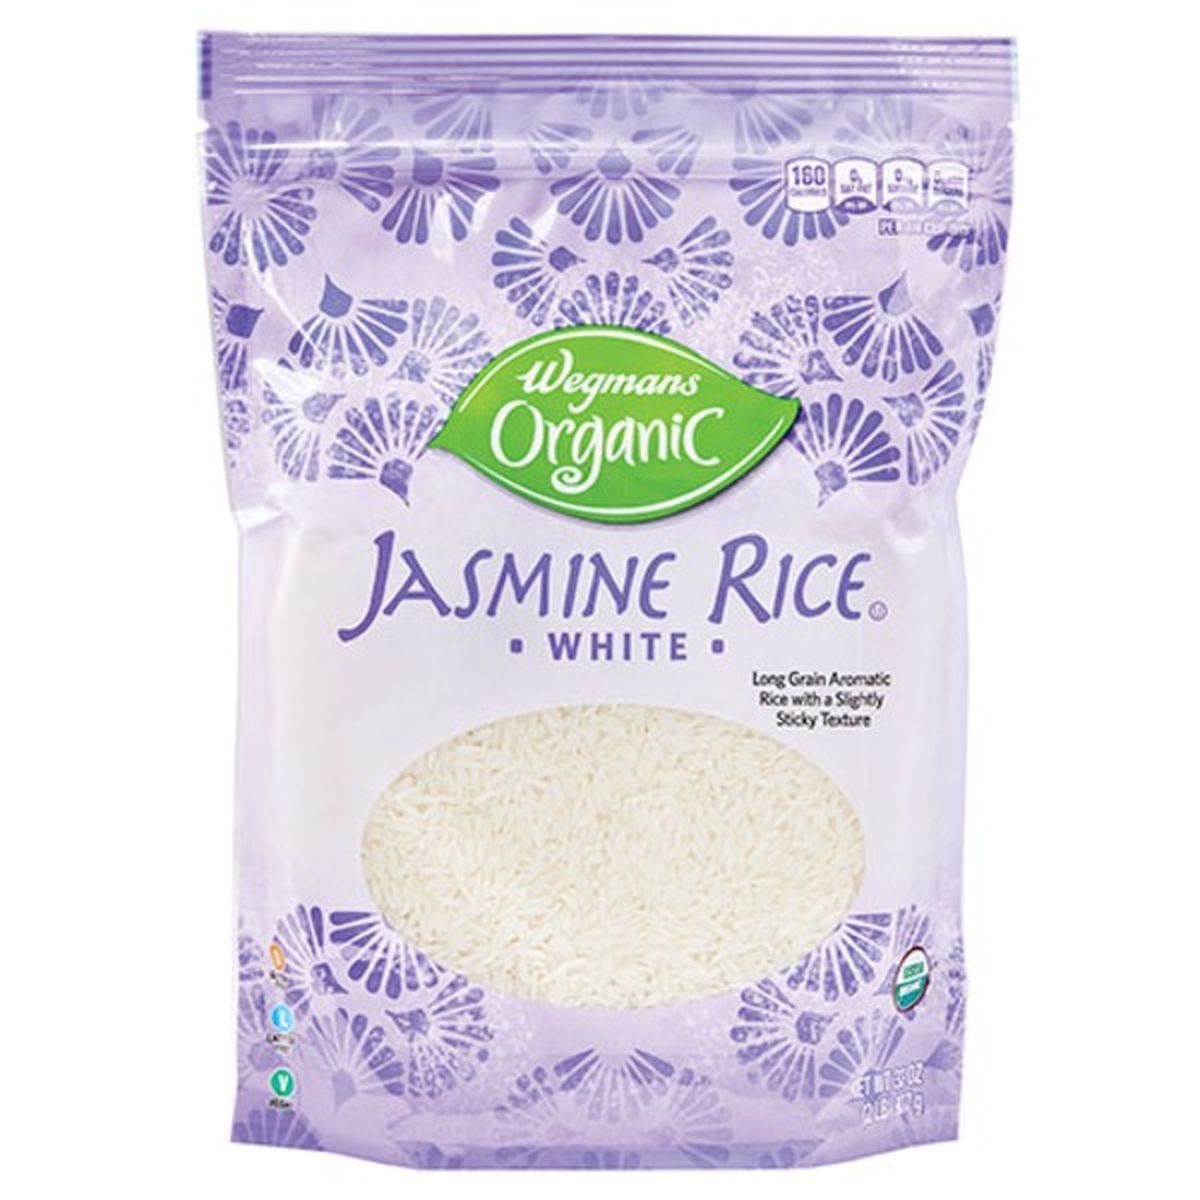 Calories in Wegmans Organic White Jasmine Rice